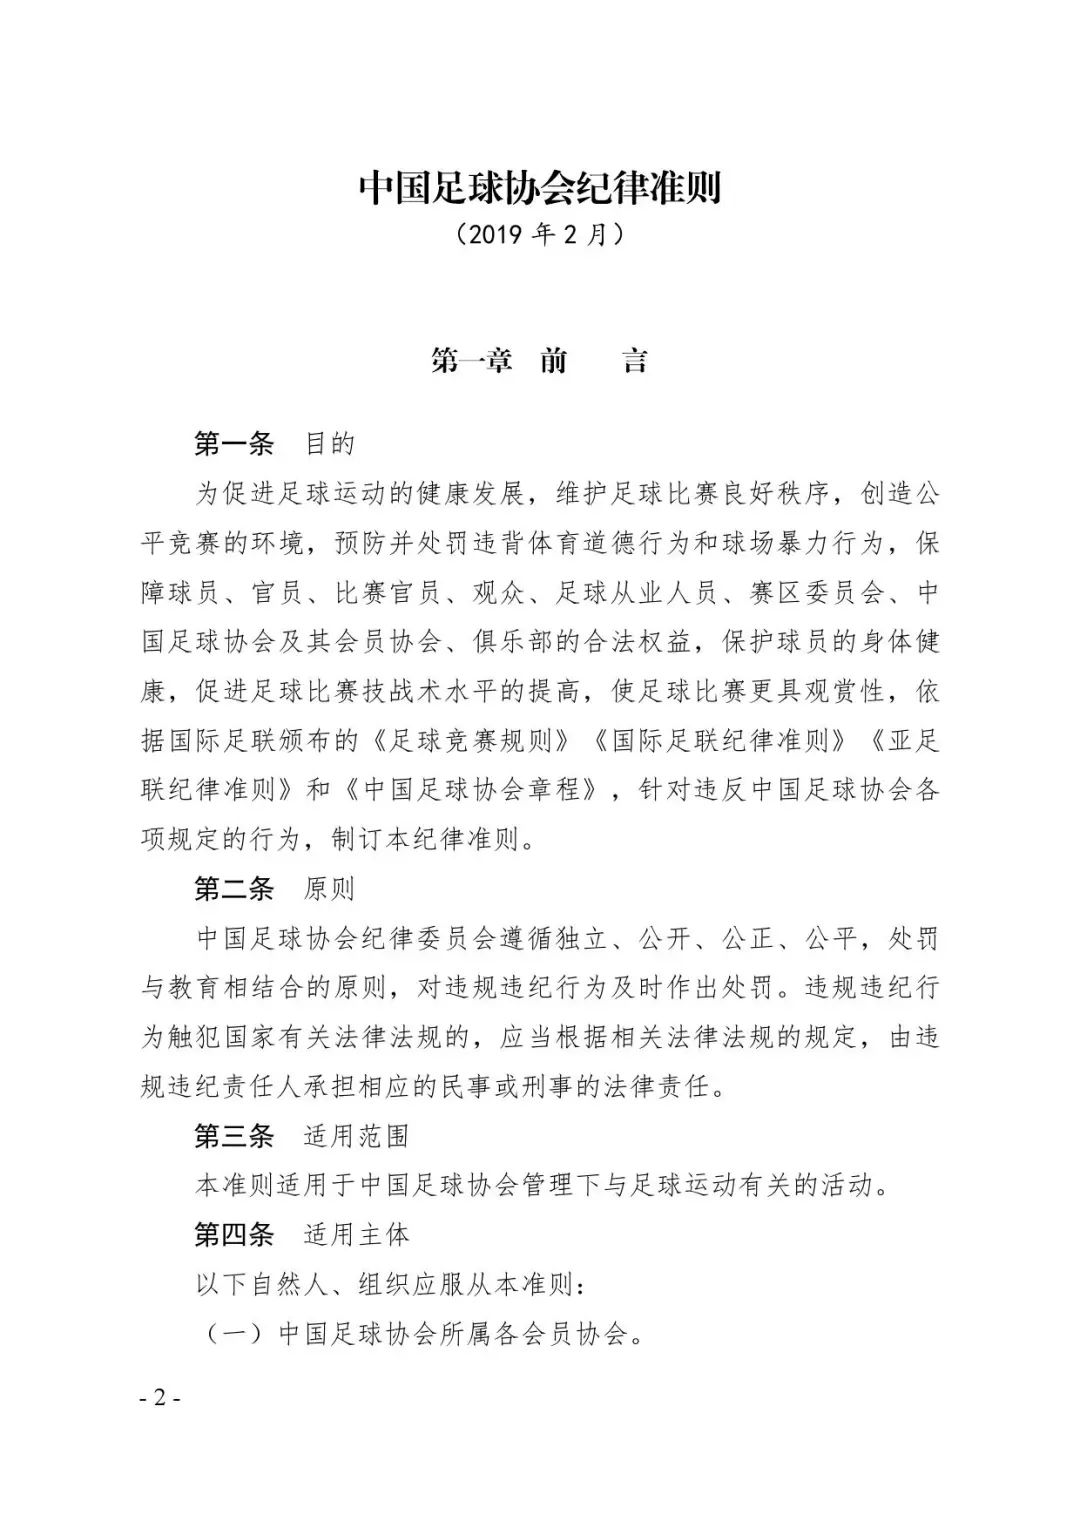 【联赛文件】《中国足球协会纪律准则(2019版